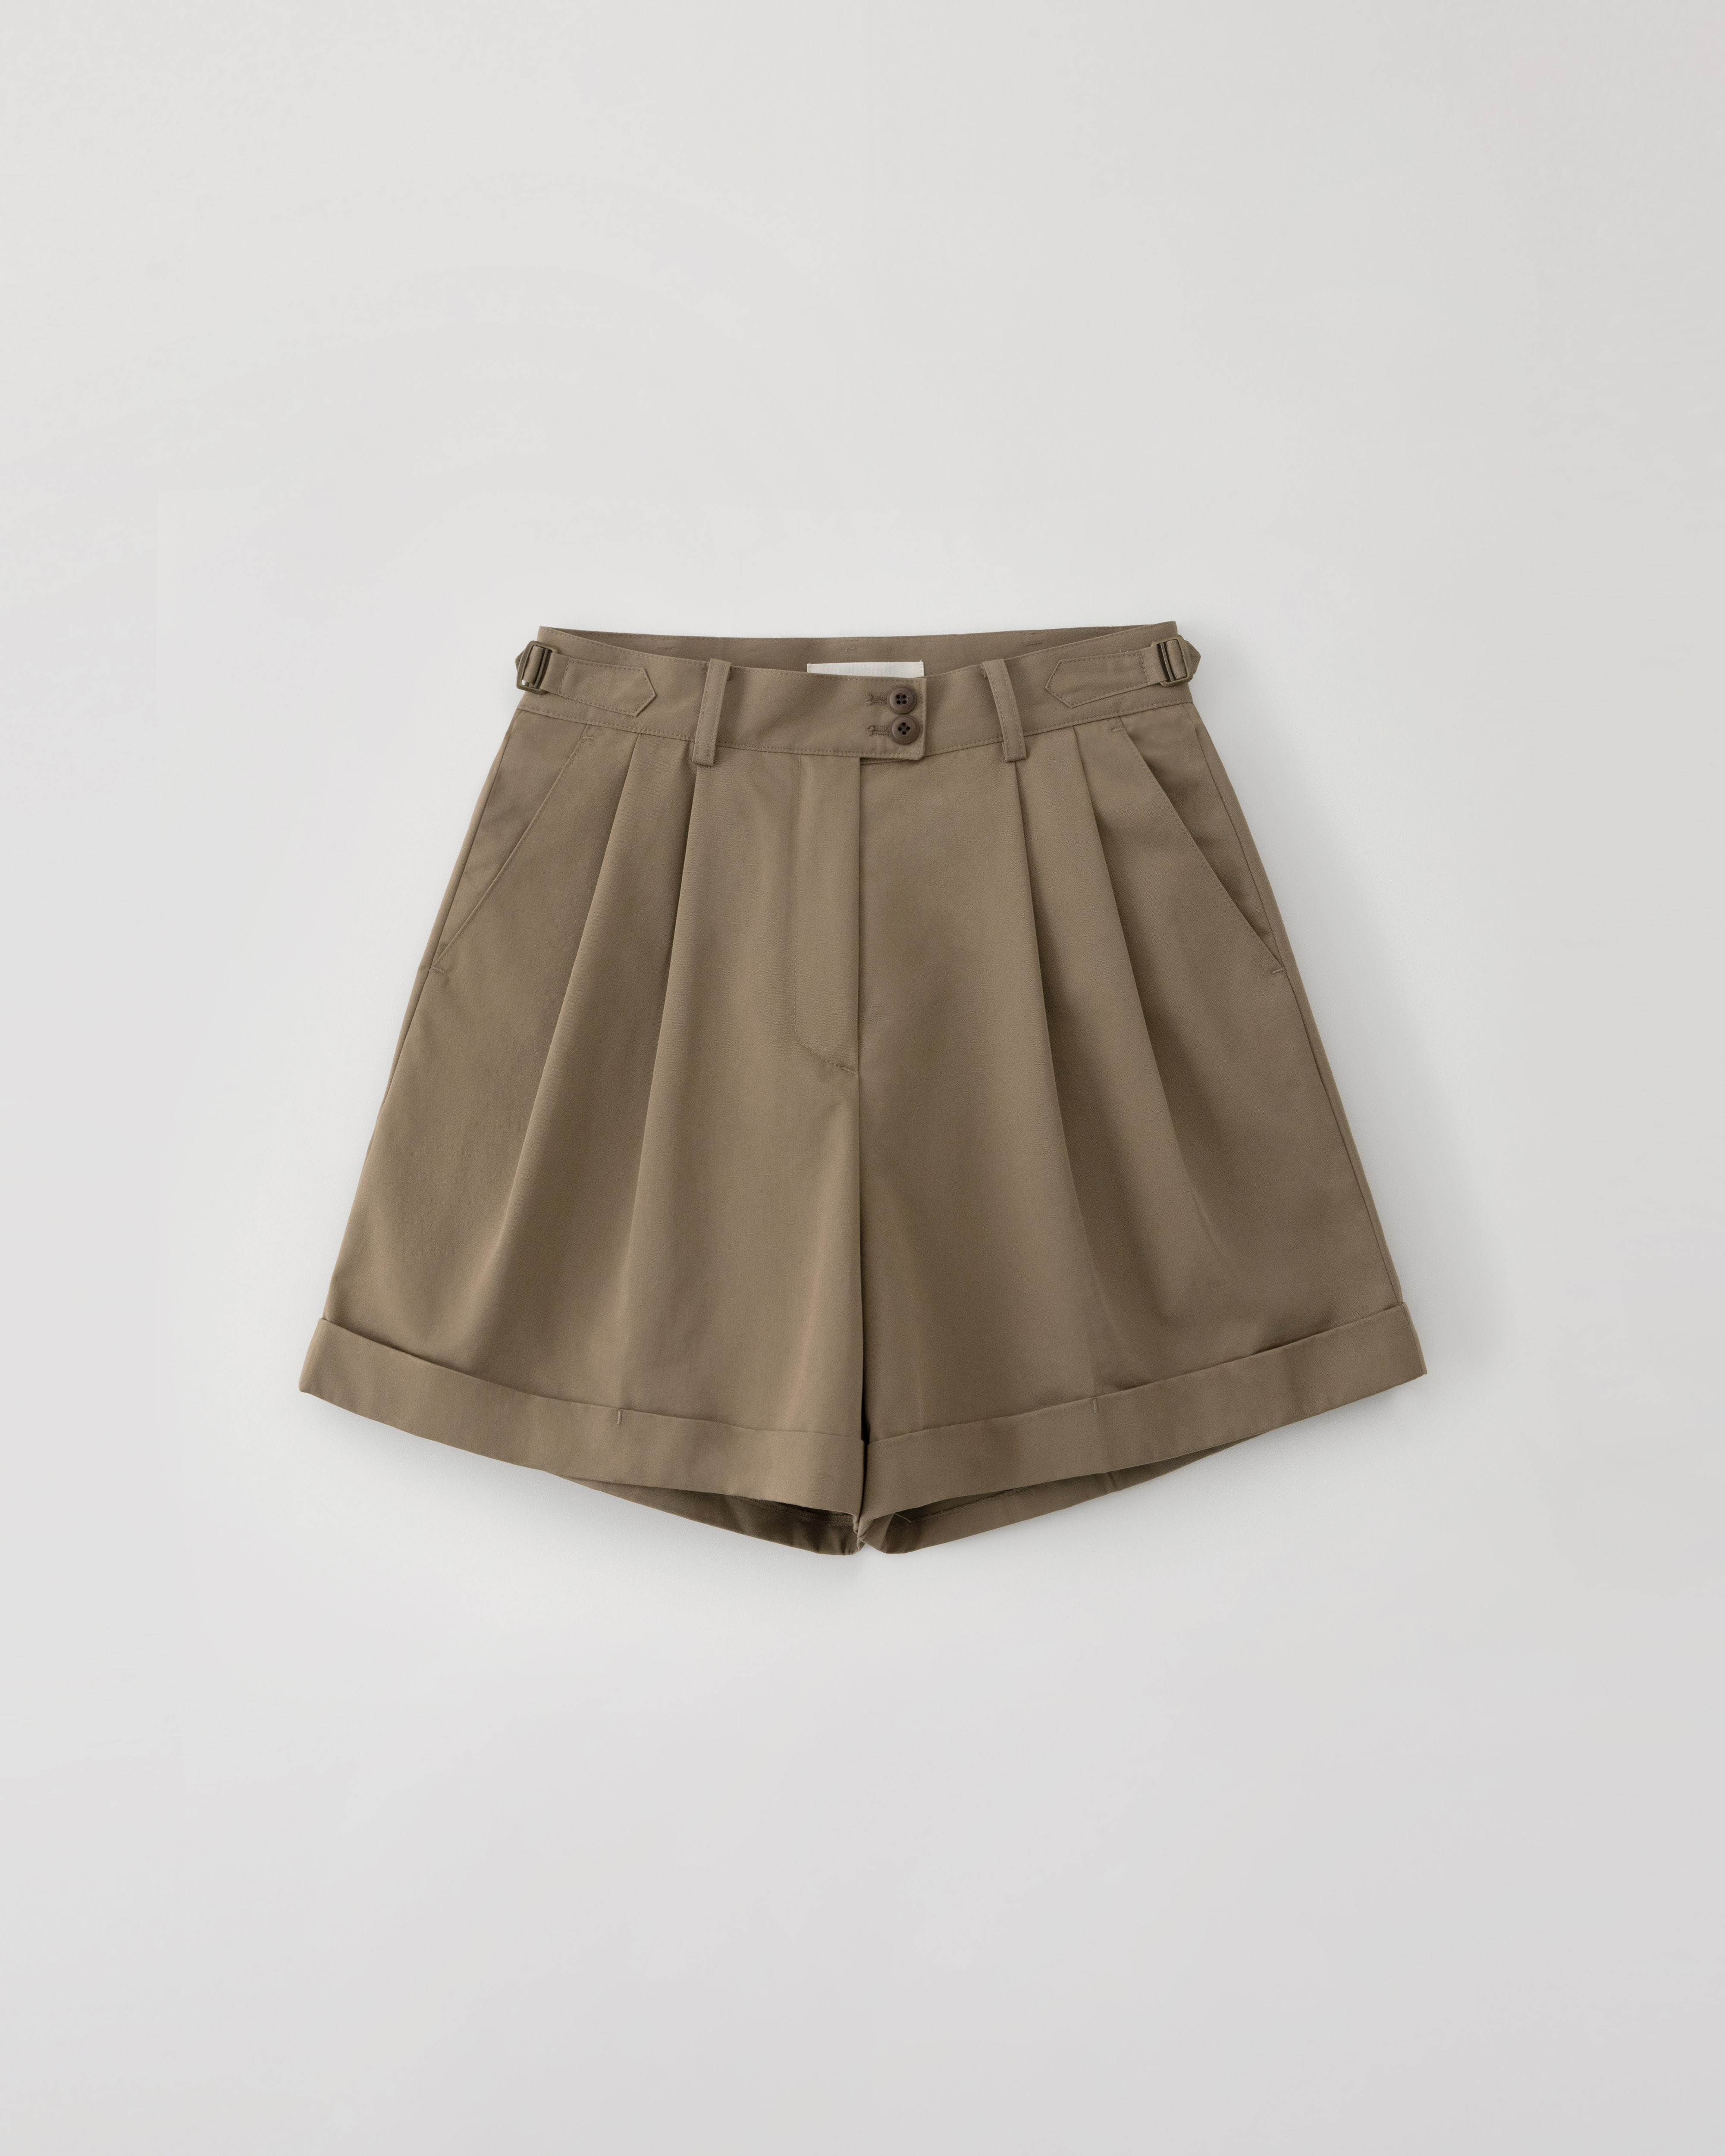 (재입고 준비중) Winnona travel shorts - mocha brown